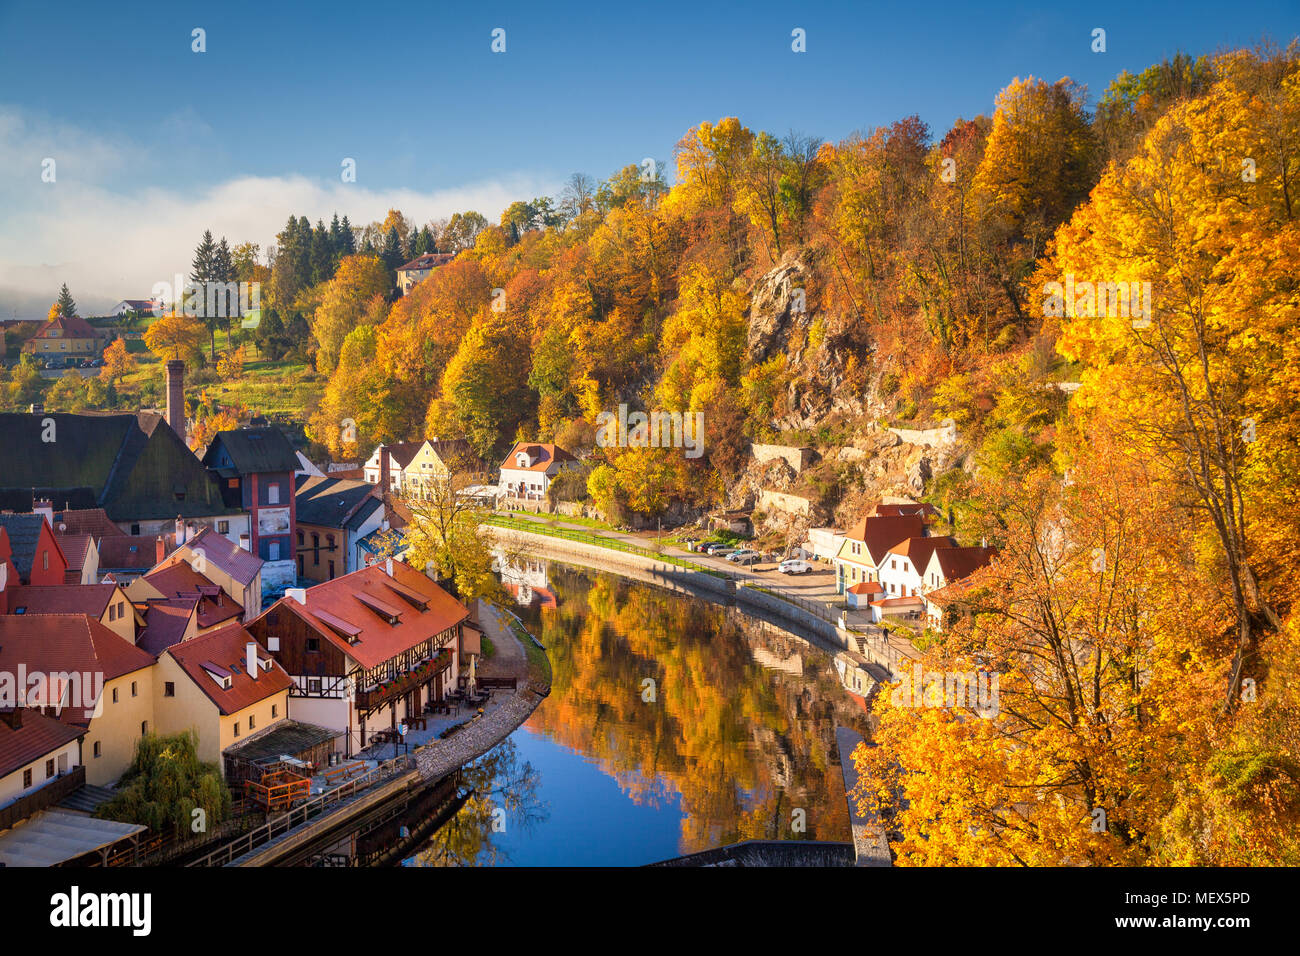 Historische Stadt Cesky Krumlov, die zum UNESCO-Weltkulturerbe seit 1992, in der wunderschönen Golden Morgen bei Sonnenaufgang im Herbst, Böhmen, Tschechische Republik Stockfoto